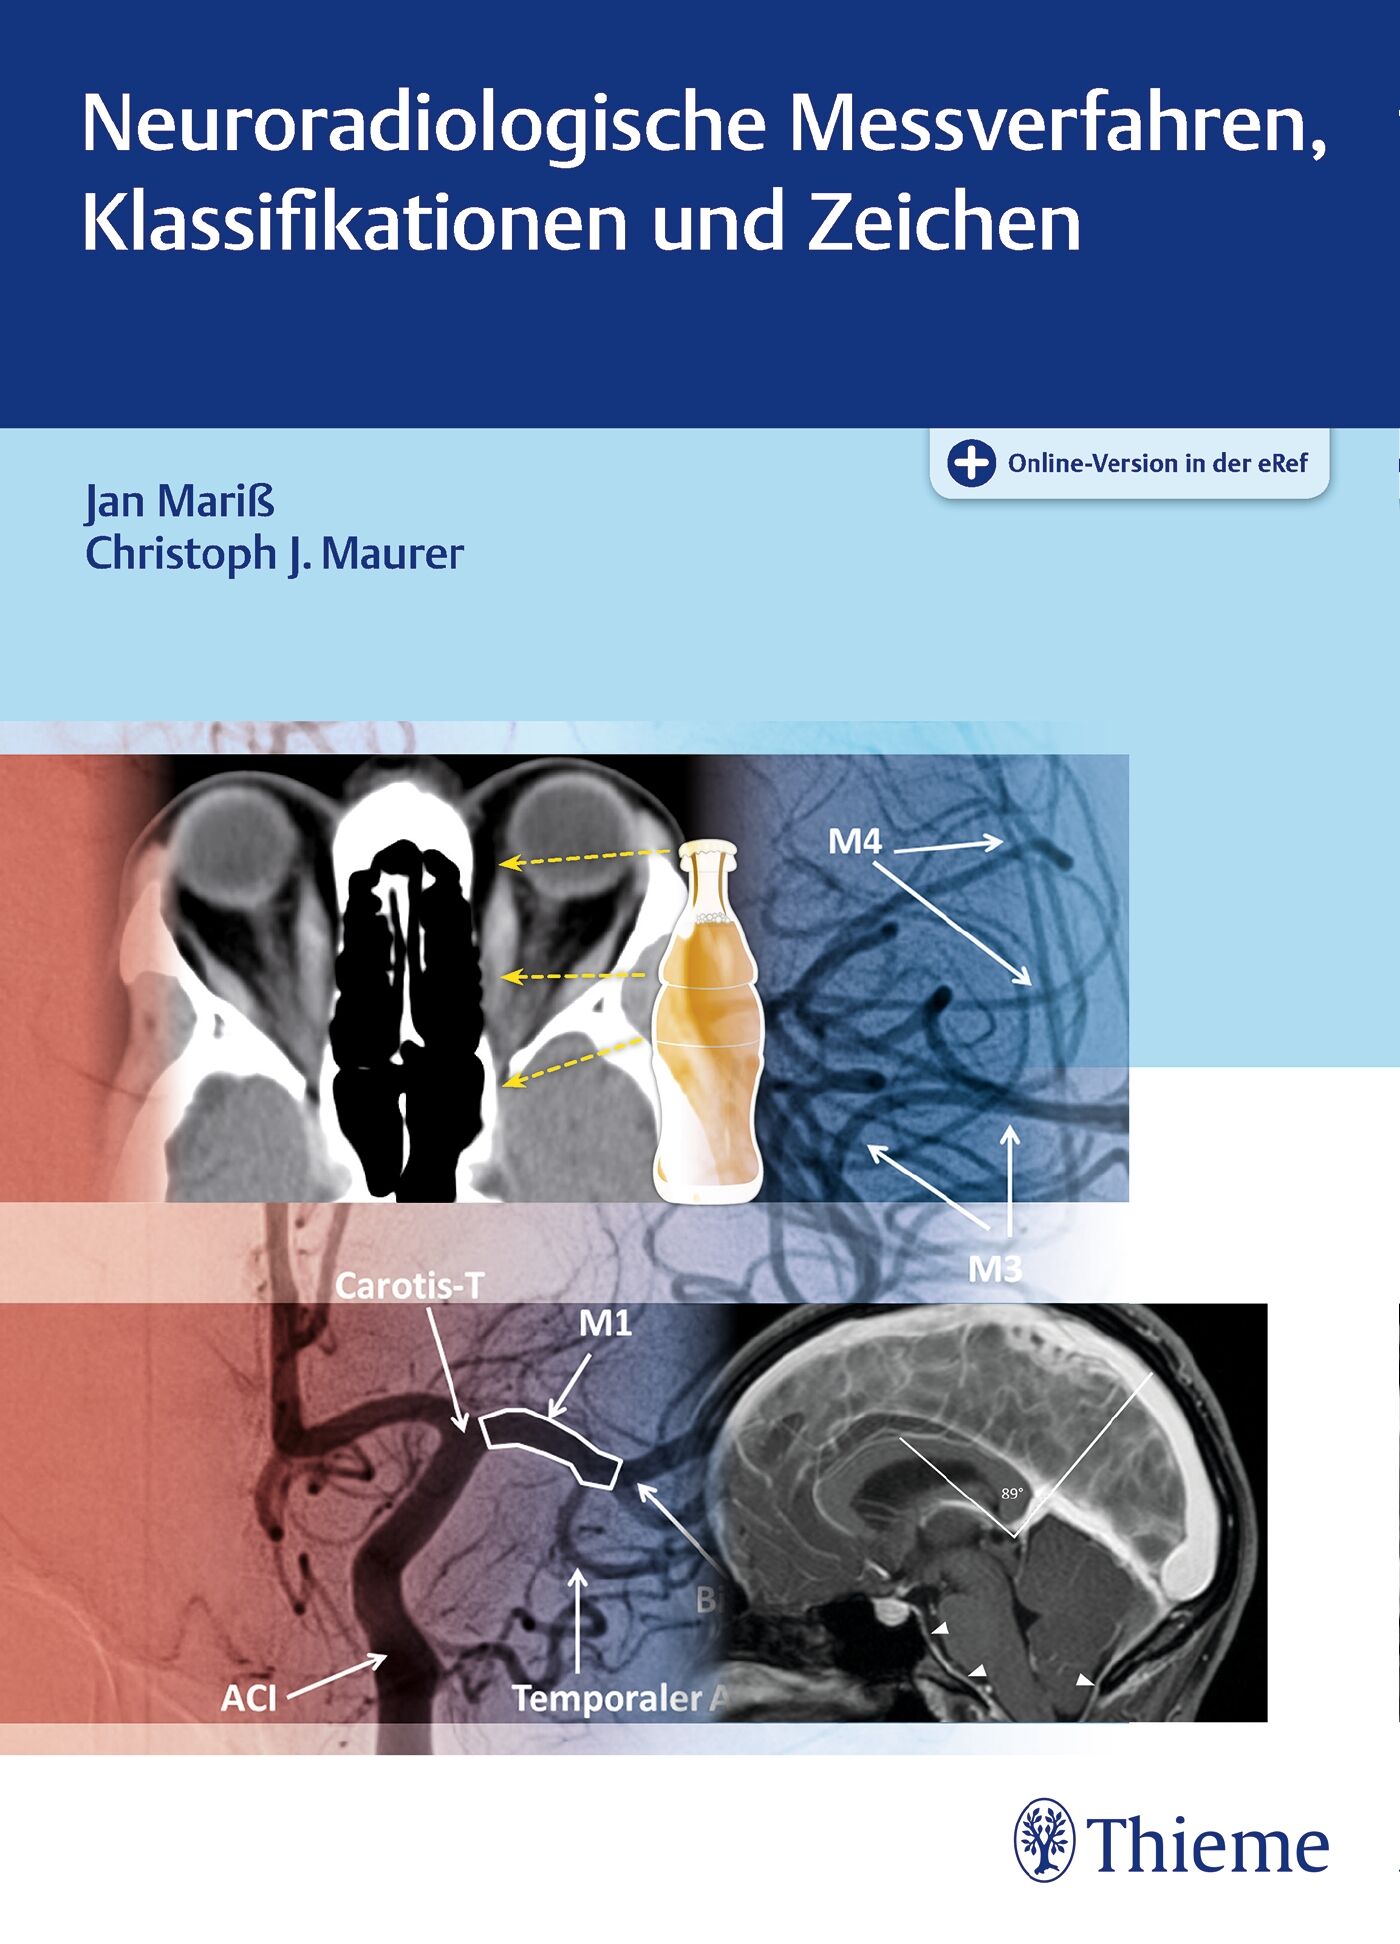 Neuroradiologische Messverfahren, Klassifikationen und Zeichen, 9783131754417